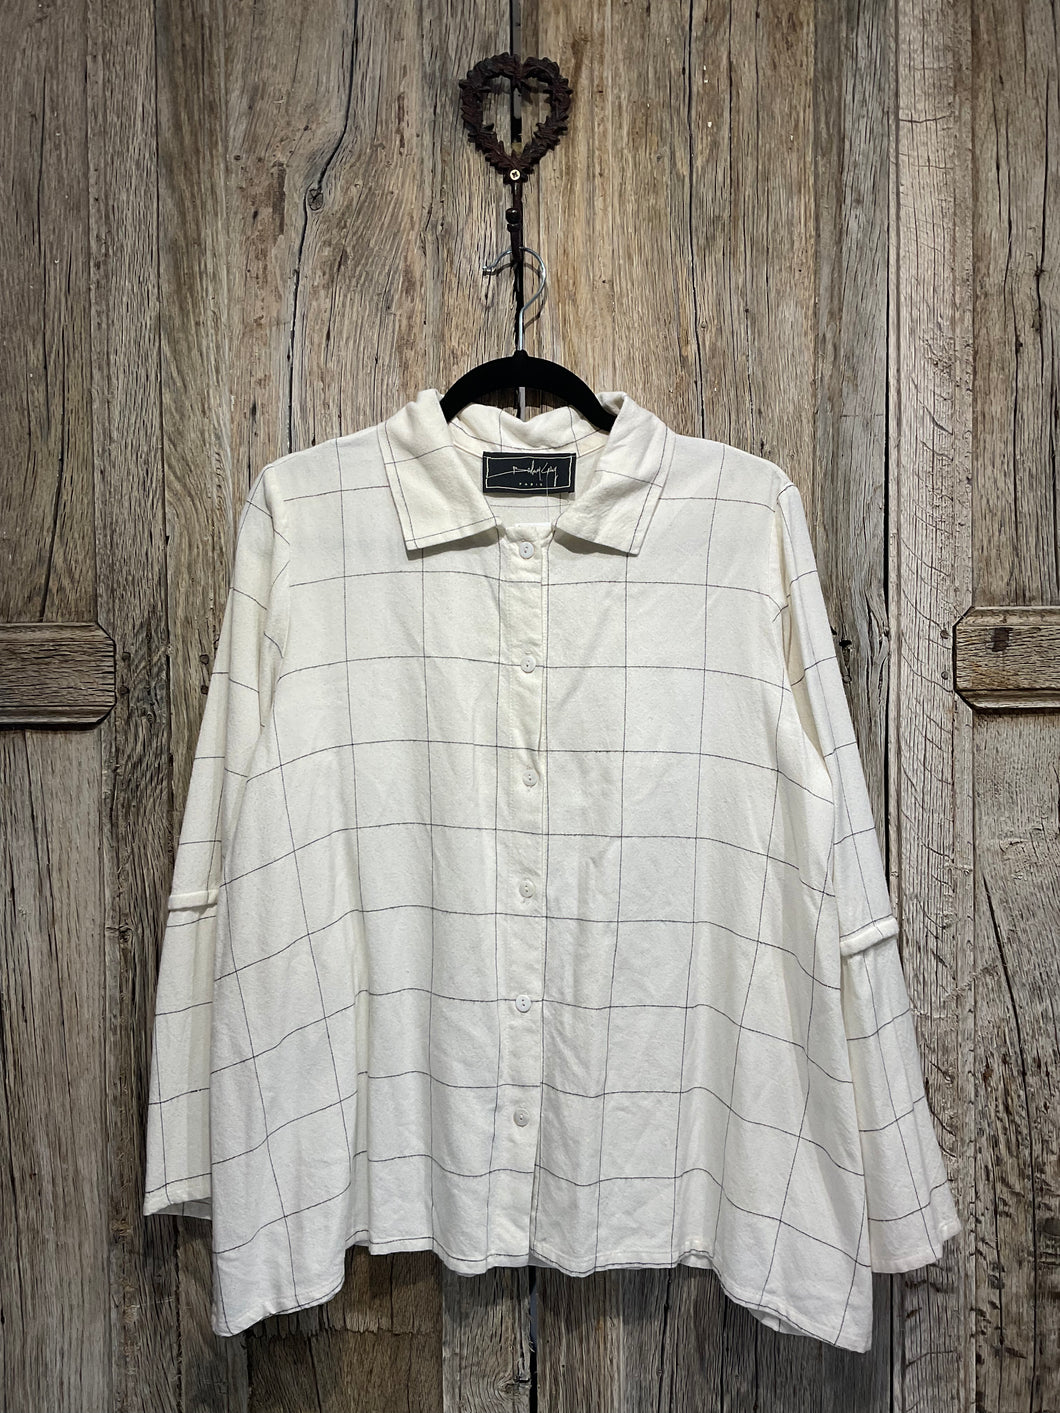 Preloved Barbara Lang Cream Check Shirt